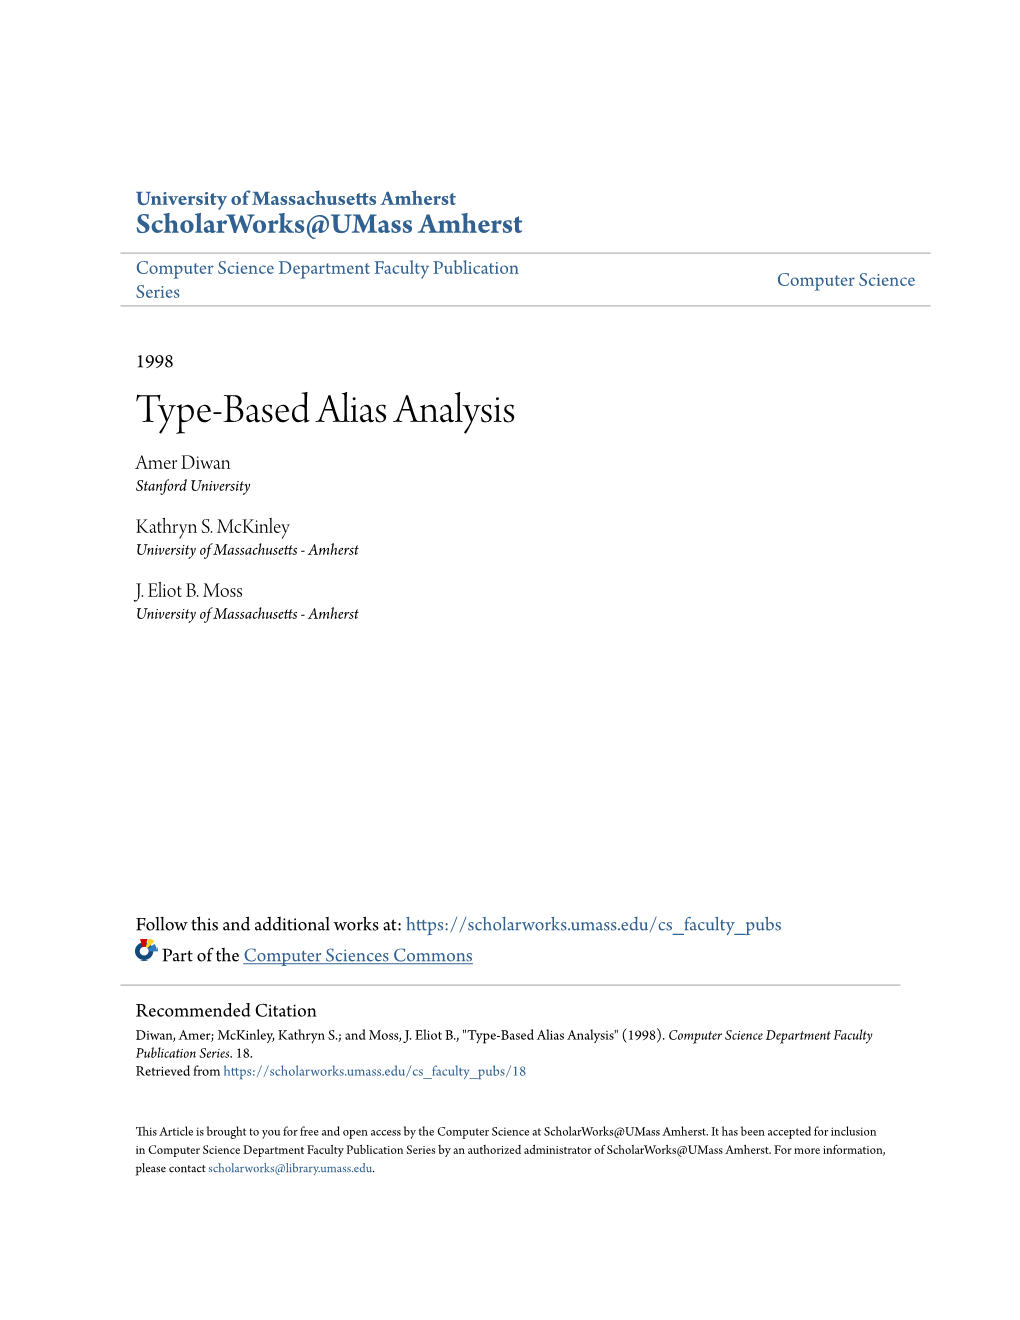 Type-Based Alias Analysis Amer Diwan Stanford University